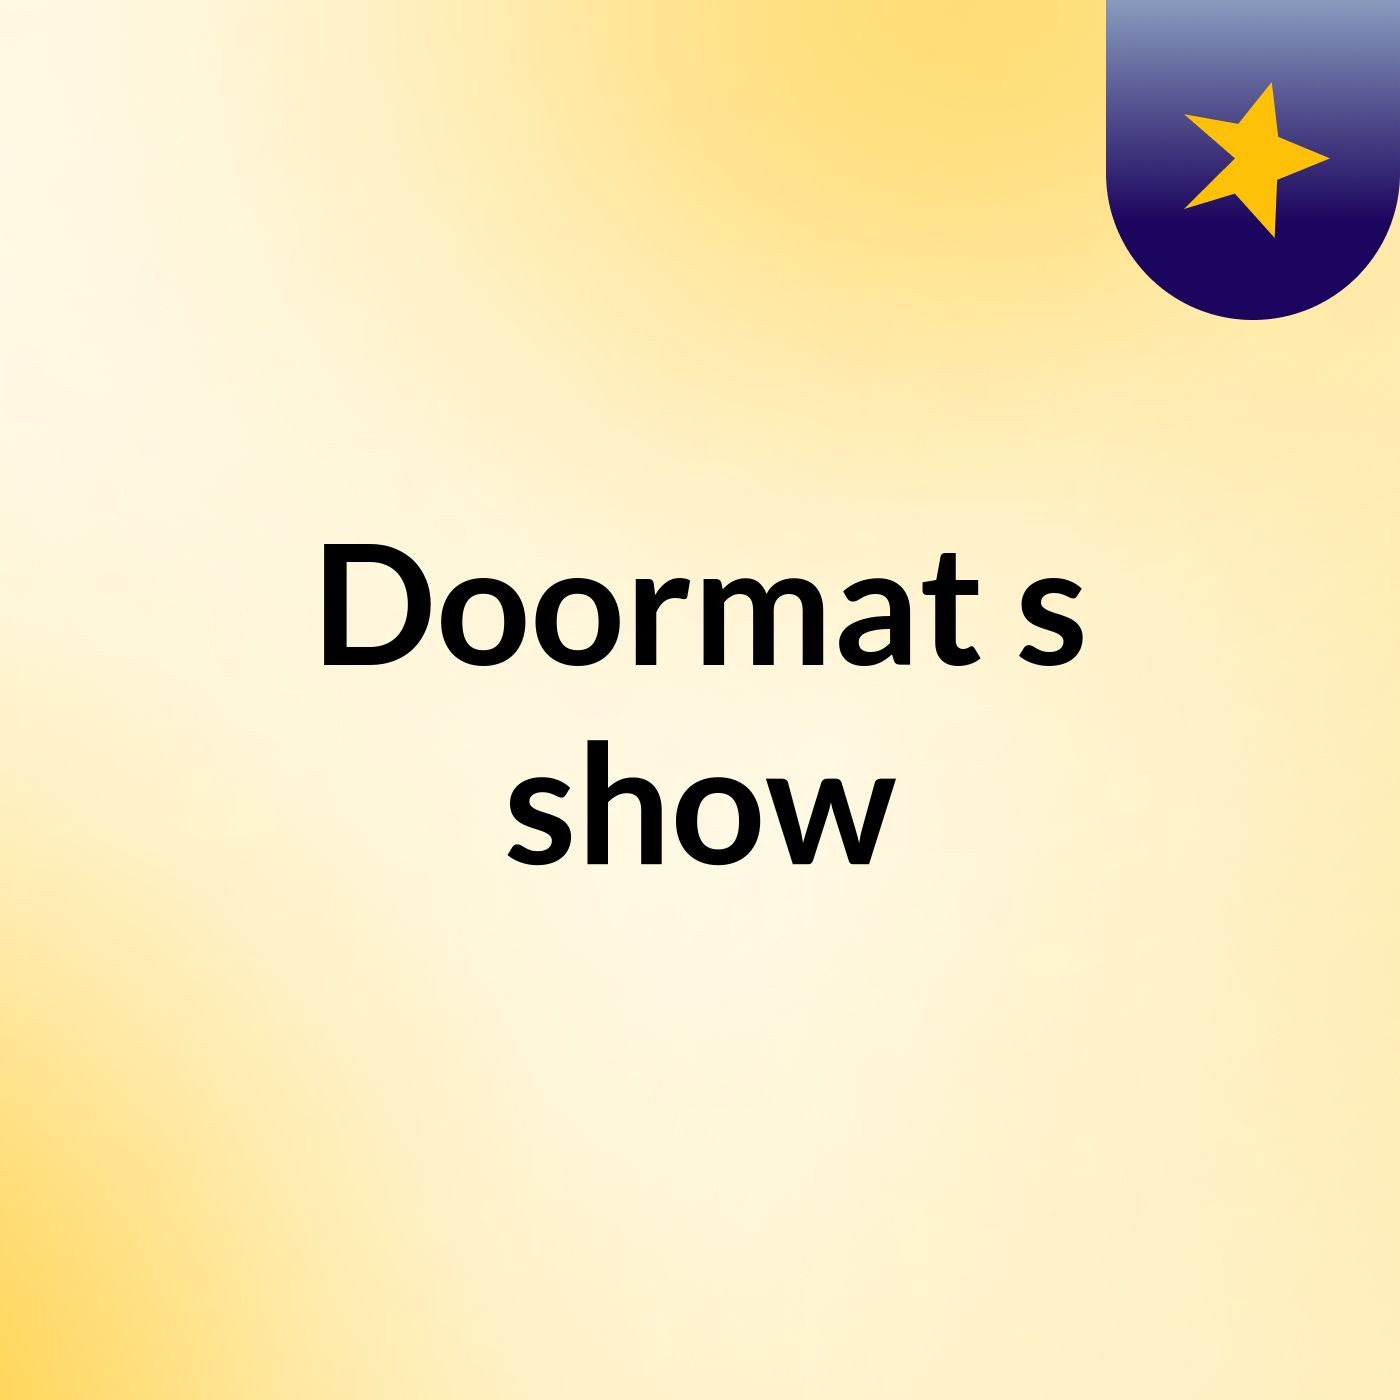 Doormat's show